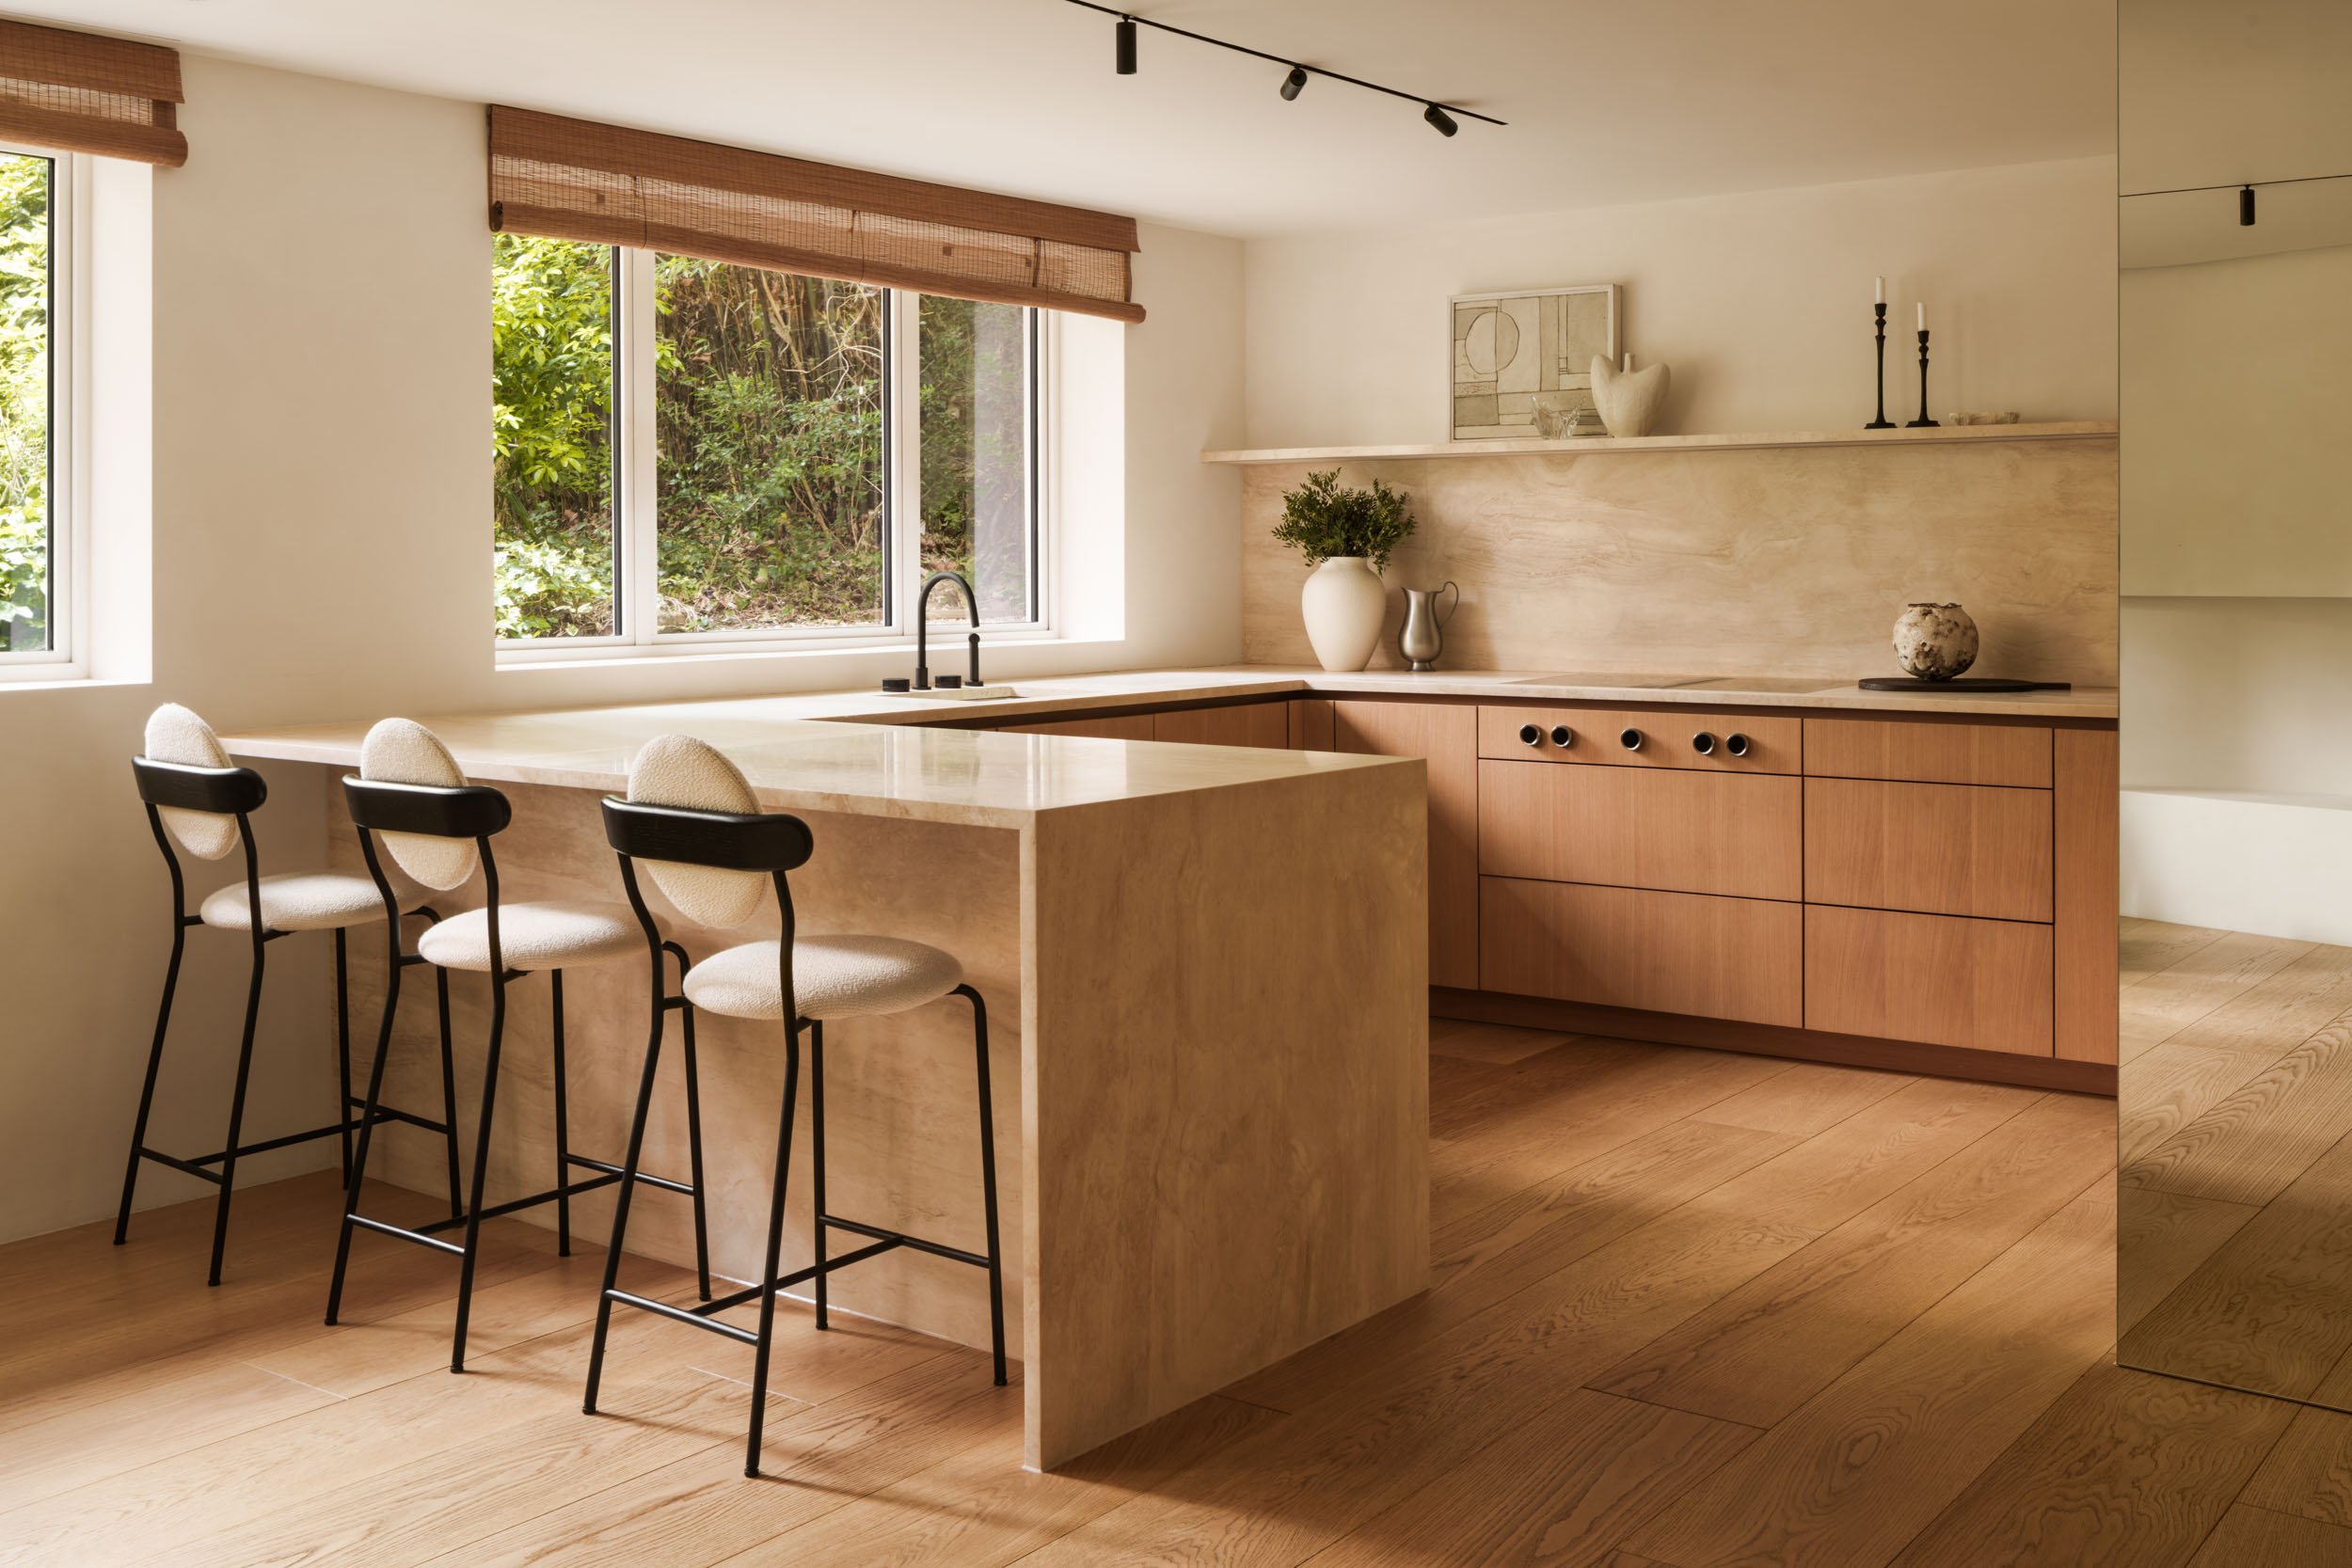 contemporary-interior-design-kitchen.jpg